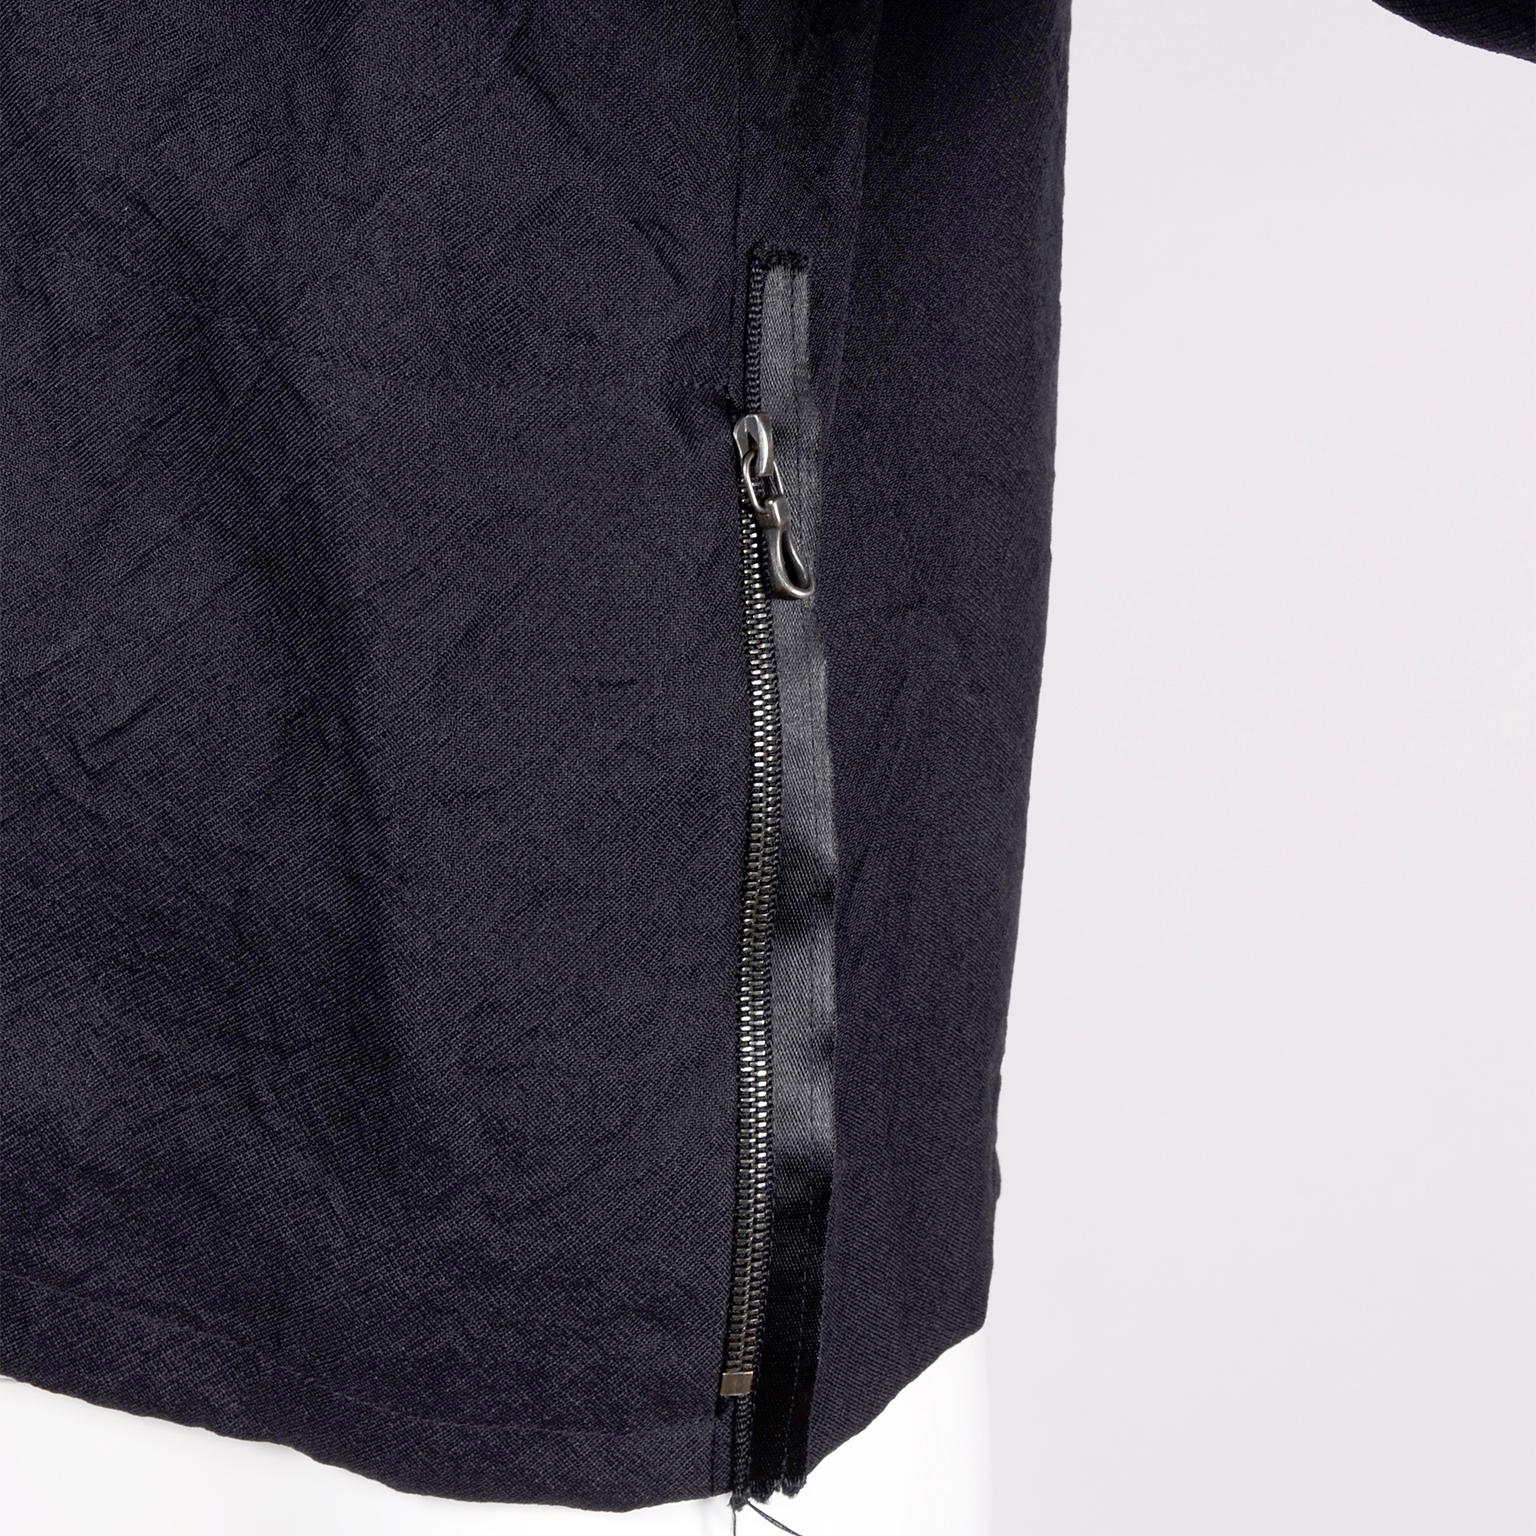 Women's Alber Elbaz 2006 Lanvin Jacket / Top in Black Silk w/ Blouson Sleeves 